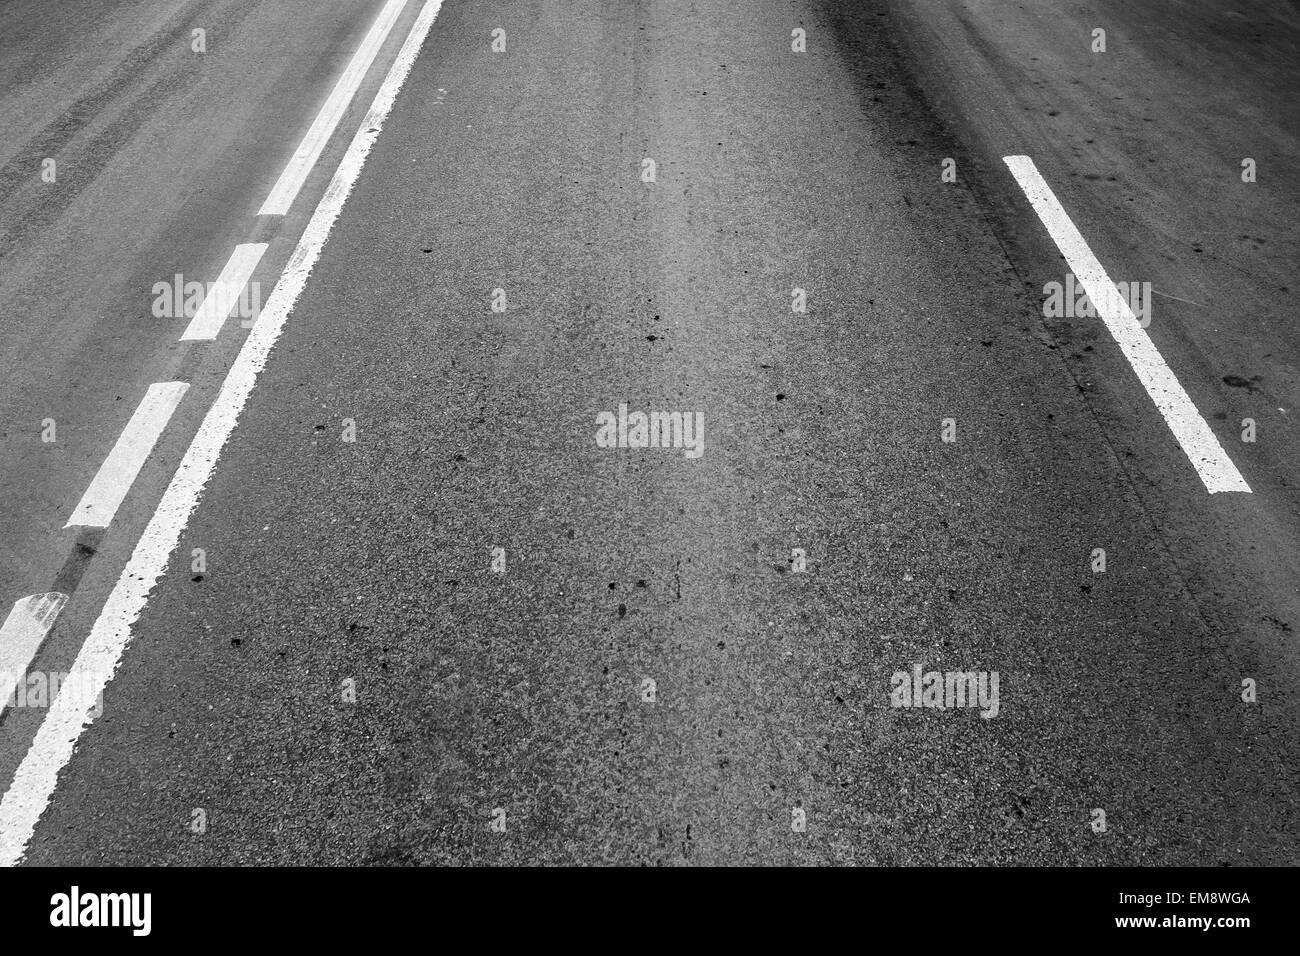 Strada asfaltata con linee divisorie e tracce di pneumatici. Foto di sfondo con effetto prospettico Foto Stock